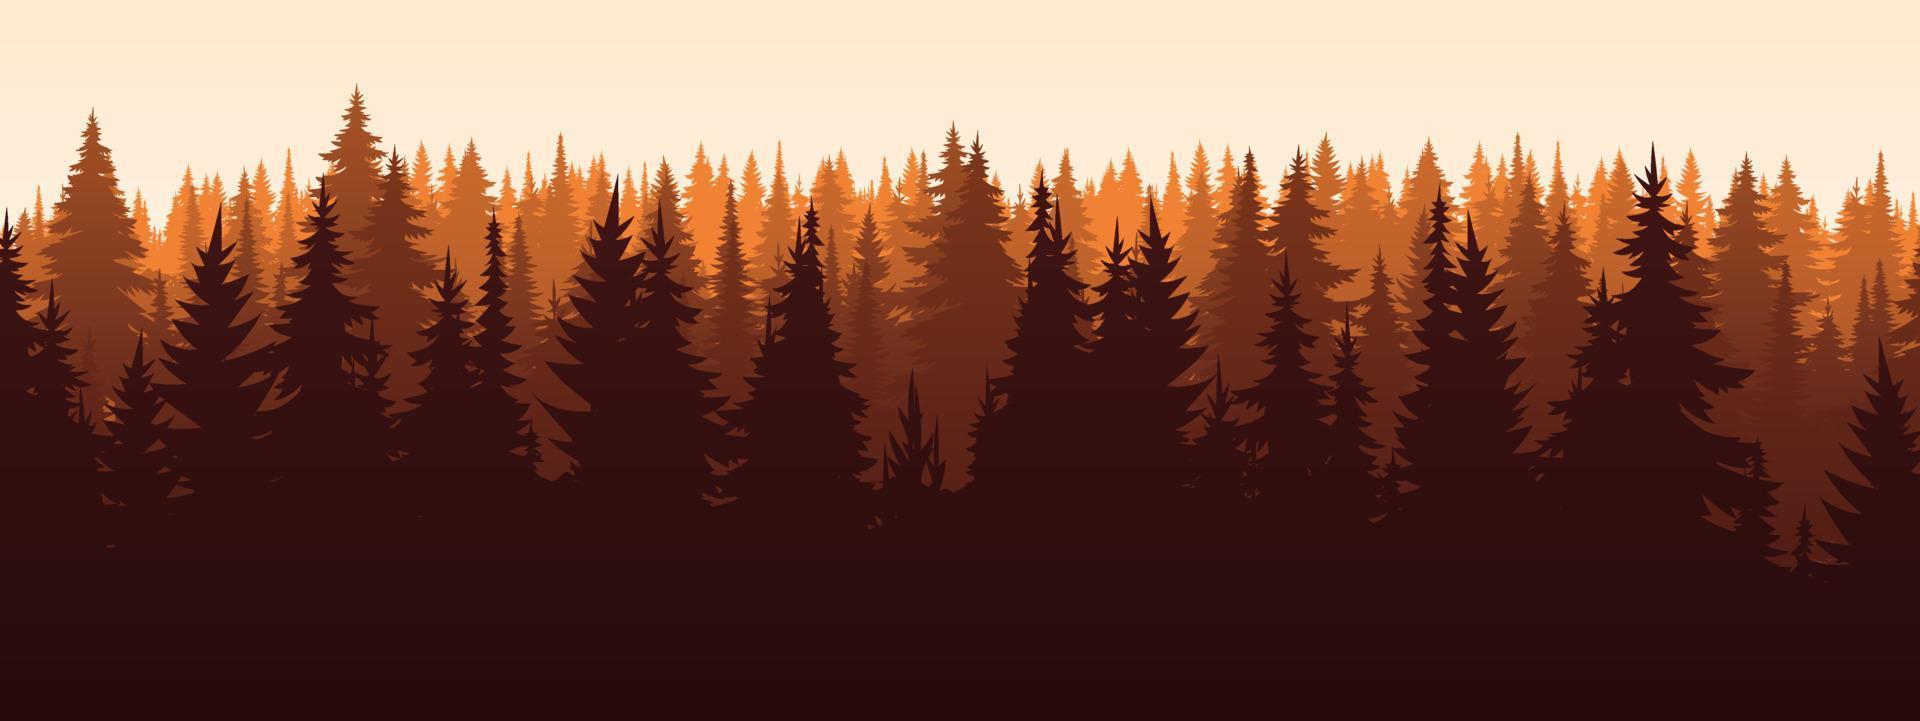 Vektor Herbst horizontale Landschaft mit Nebel, Wald, Fichte, Tanne und Morgensonne. herbstsaisonillustration der panoramablicksilhouette, des nebels und der berge. Feuer im Wald.